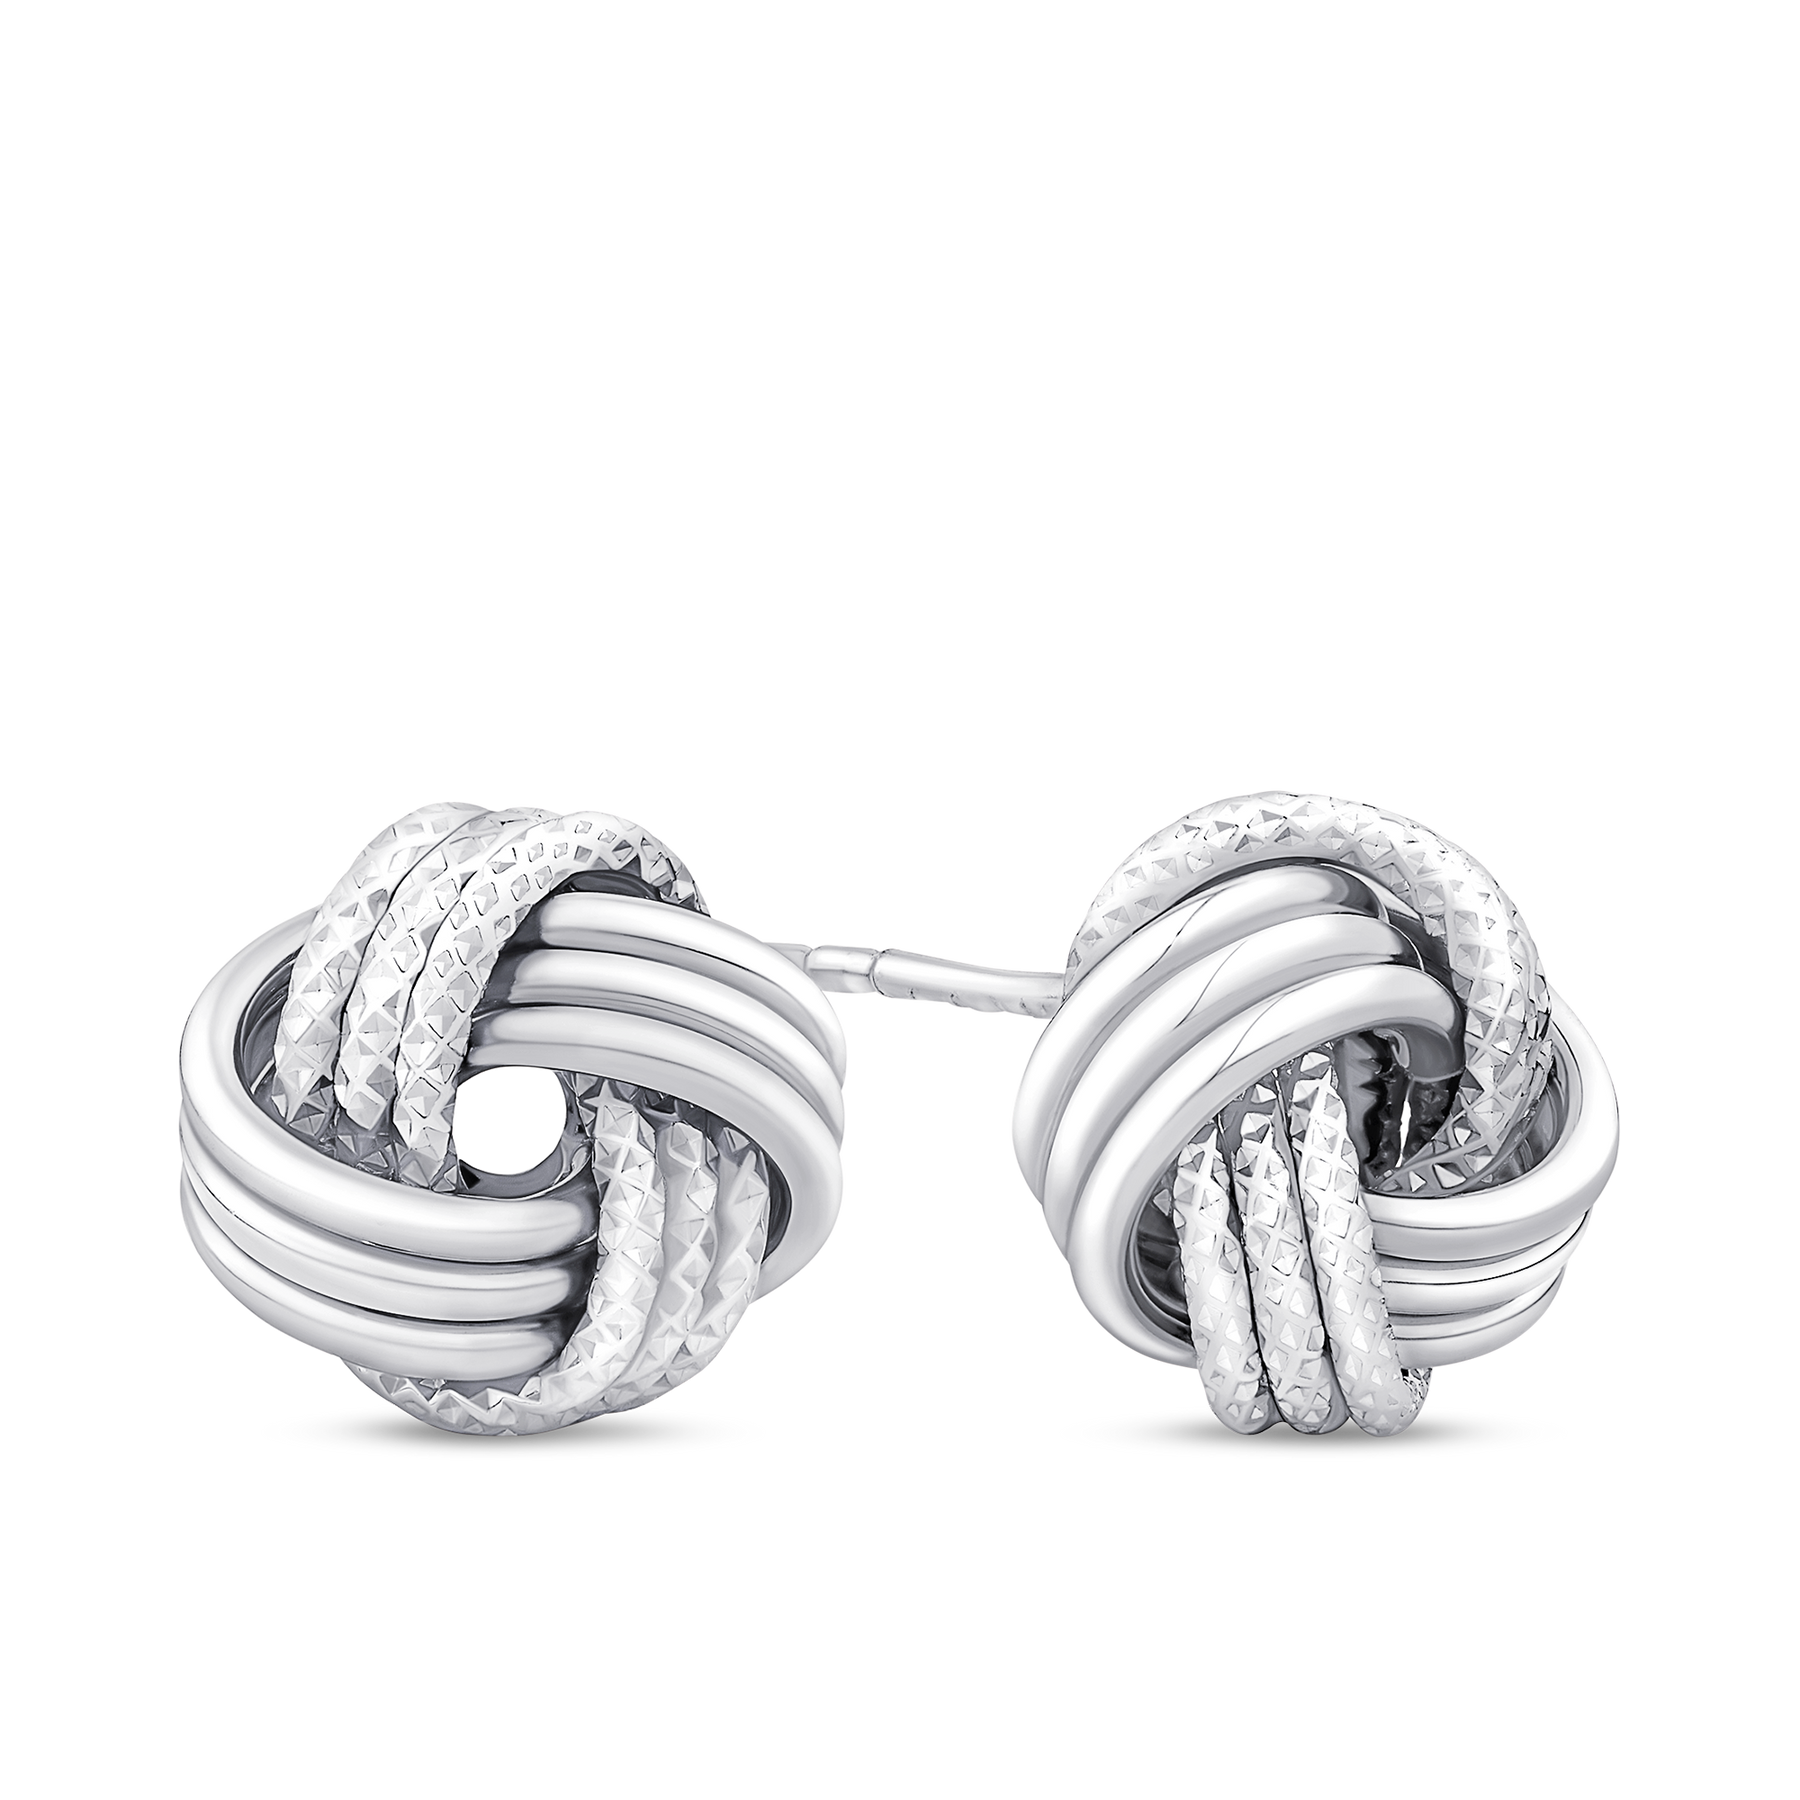 Open Knot Stud Earrings in Sterling Silver